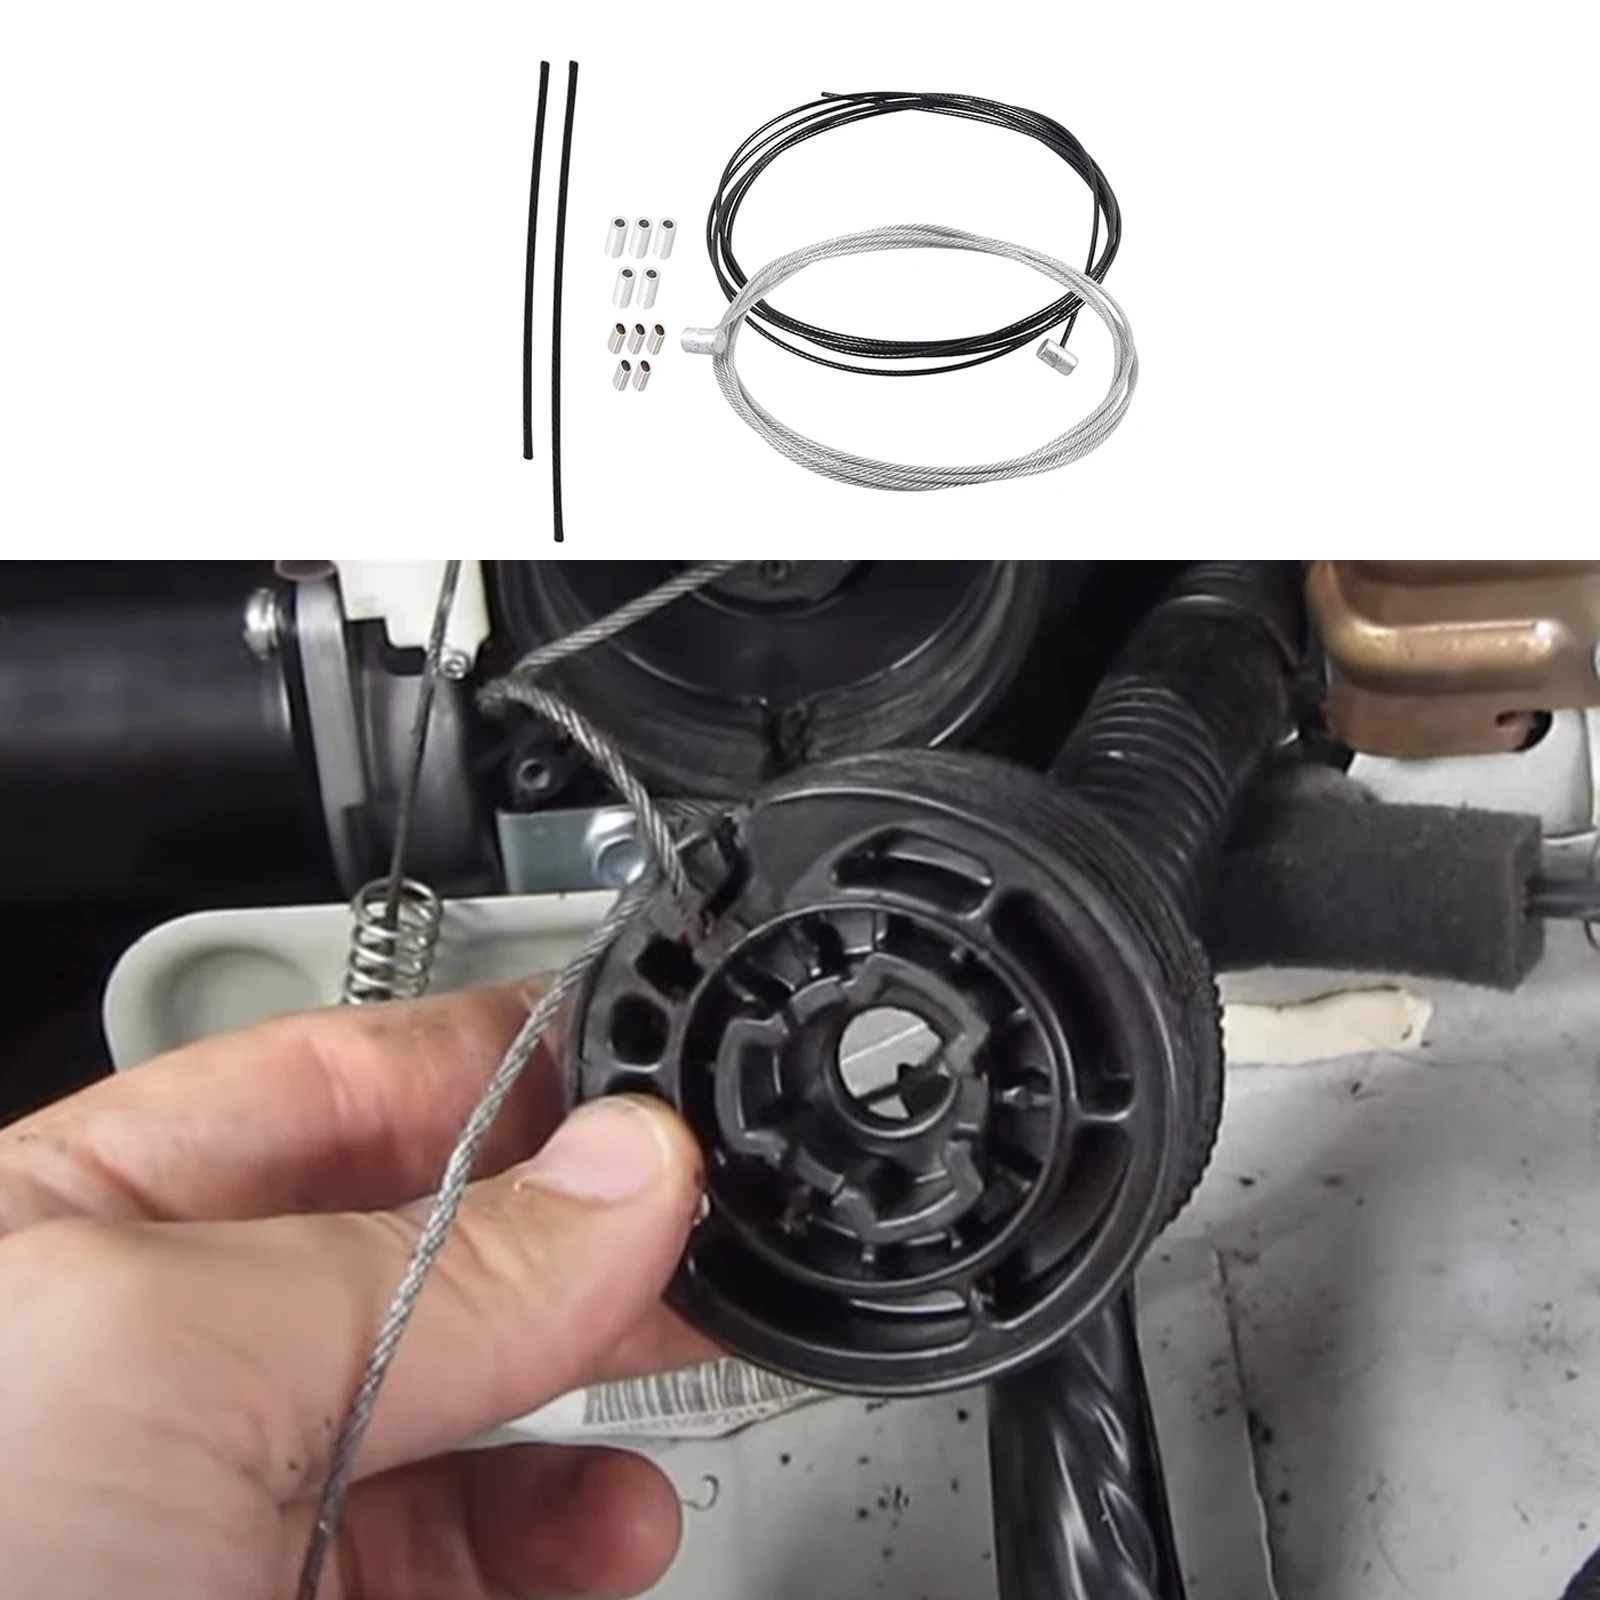 Car Vehicle Sliding Door Cable Repair Kit Replacement for Honda 2011-2017